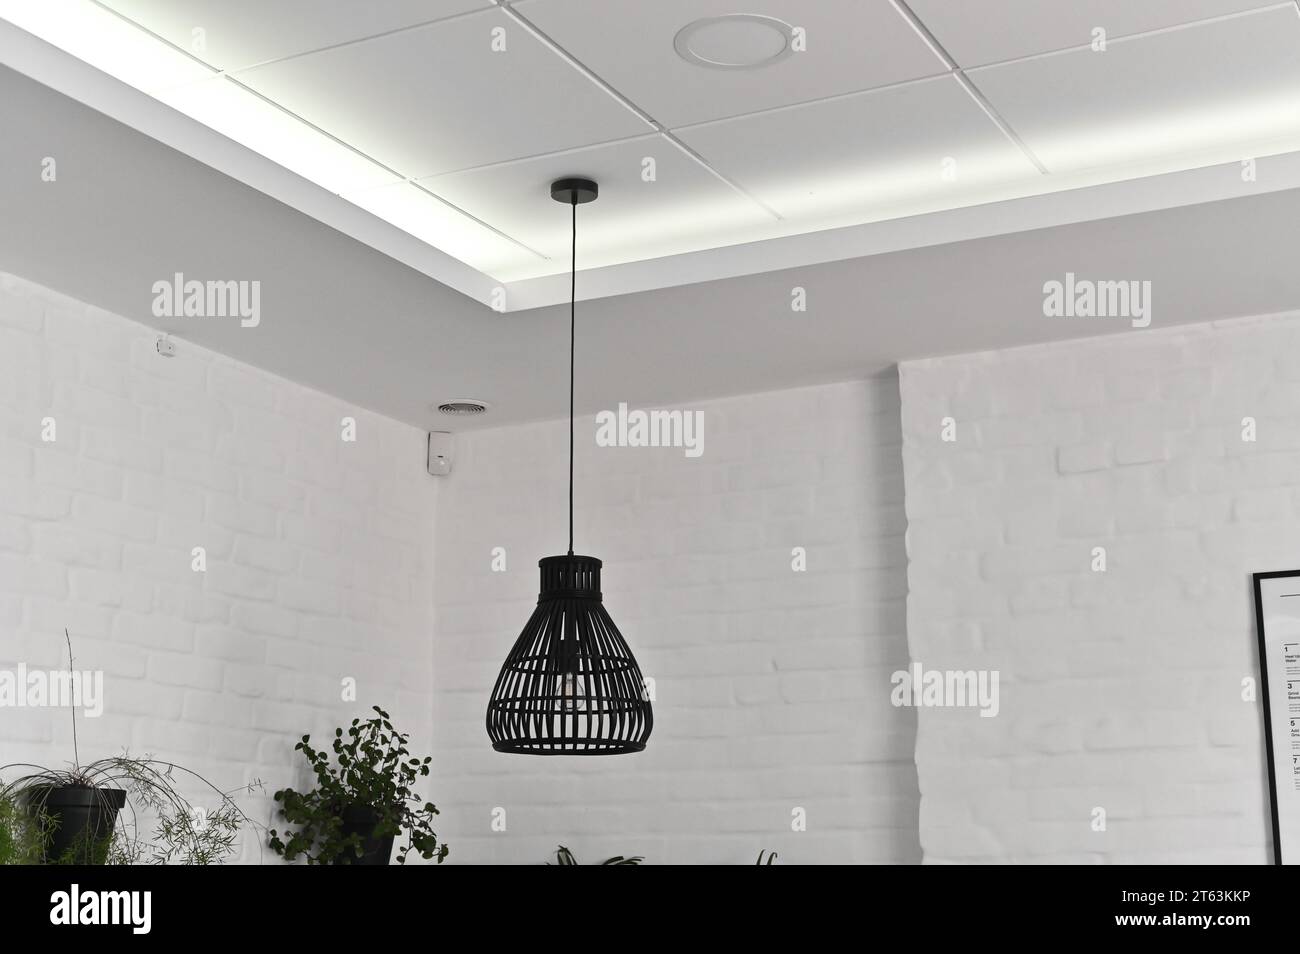 Luci su cavi lunghi davanti a un abitacolo luminoso, elementi di illuminazione e design degli interni. Foto Stock